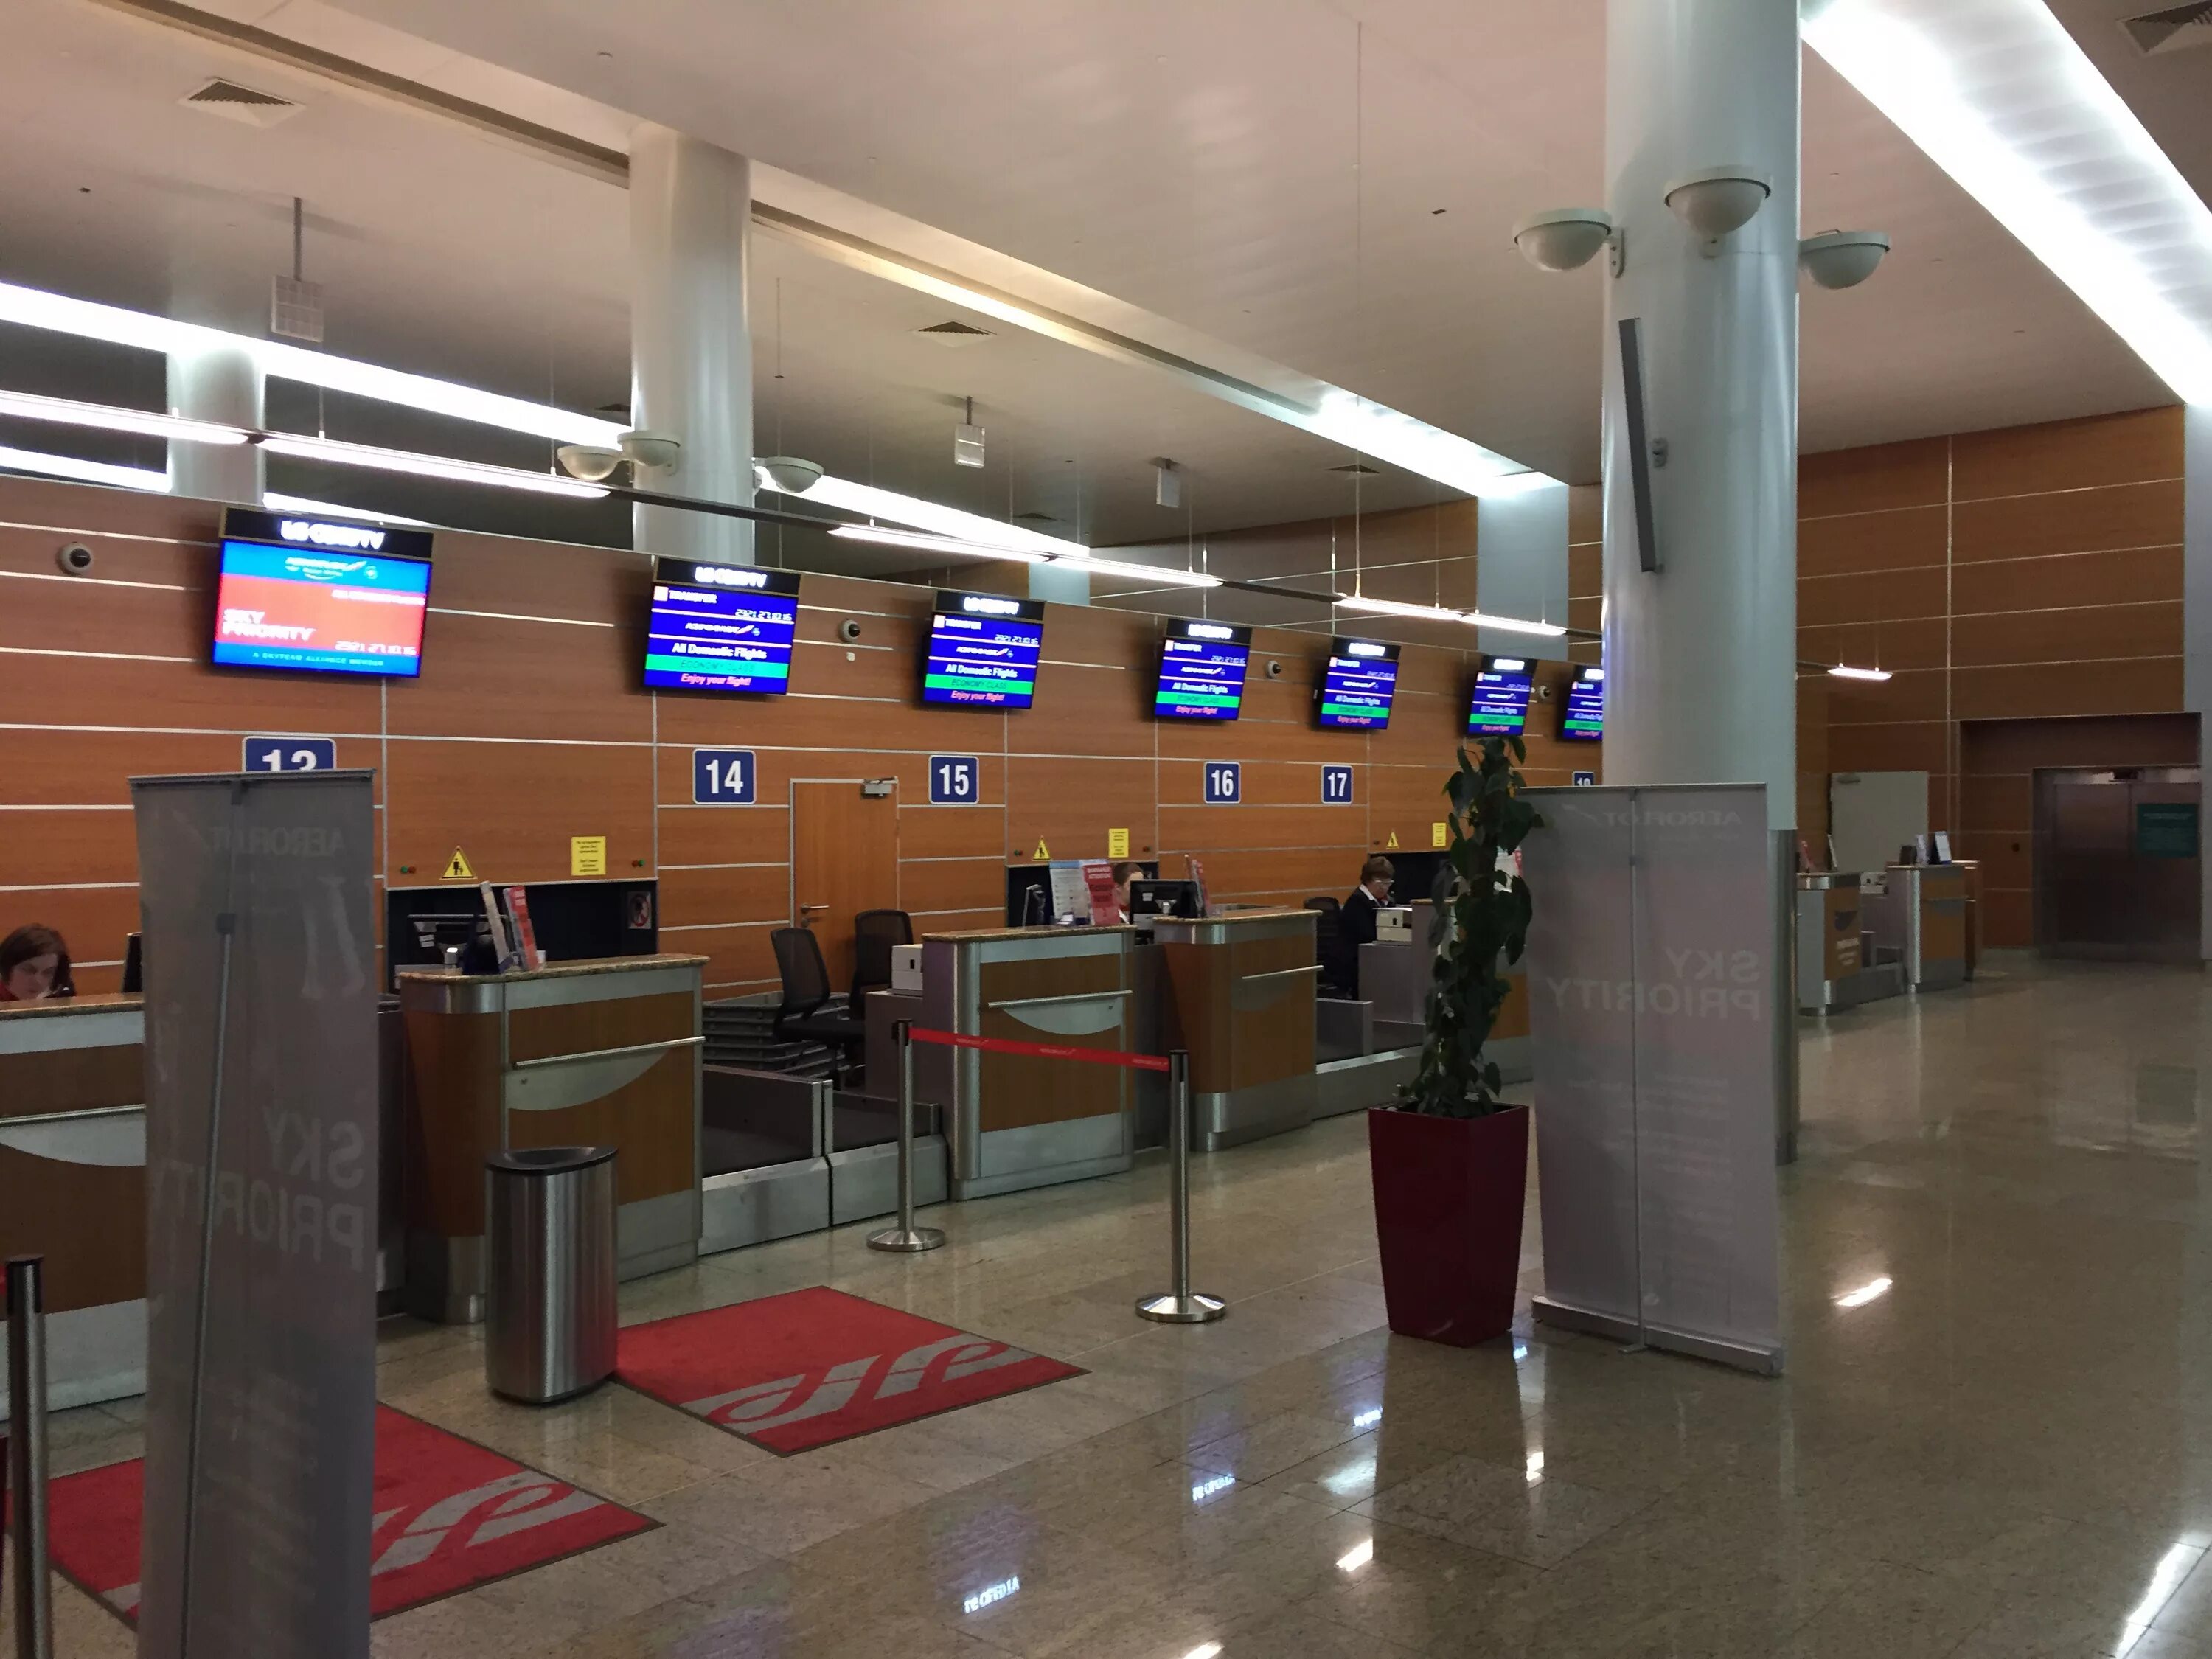 Шереметьево терминал египет. Аэропорт Шереметьево терминал д. Шереметьево терминал д внутри. Международный аэропорт Шереметьево, терминал d, Химки. Шереметьево изнутри терминал д.